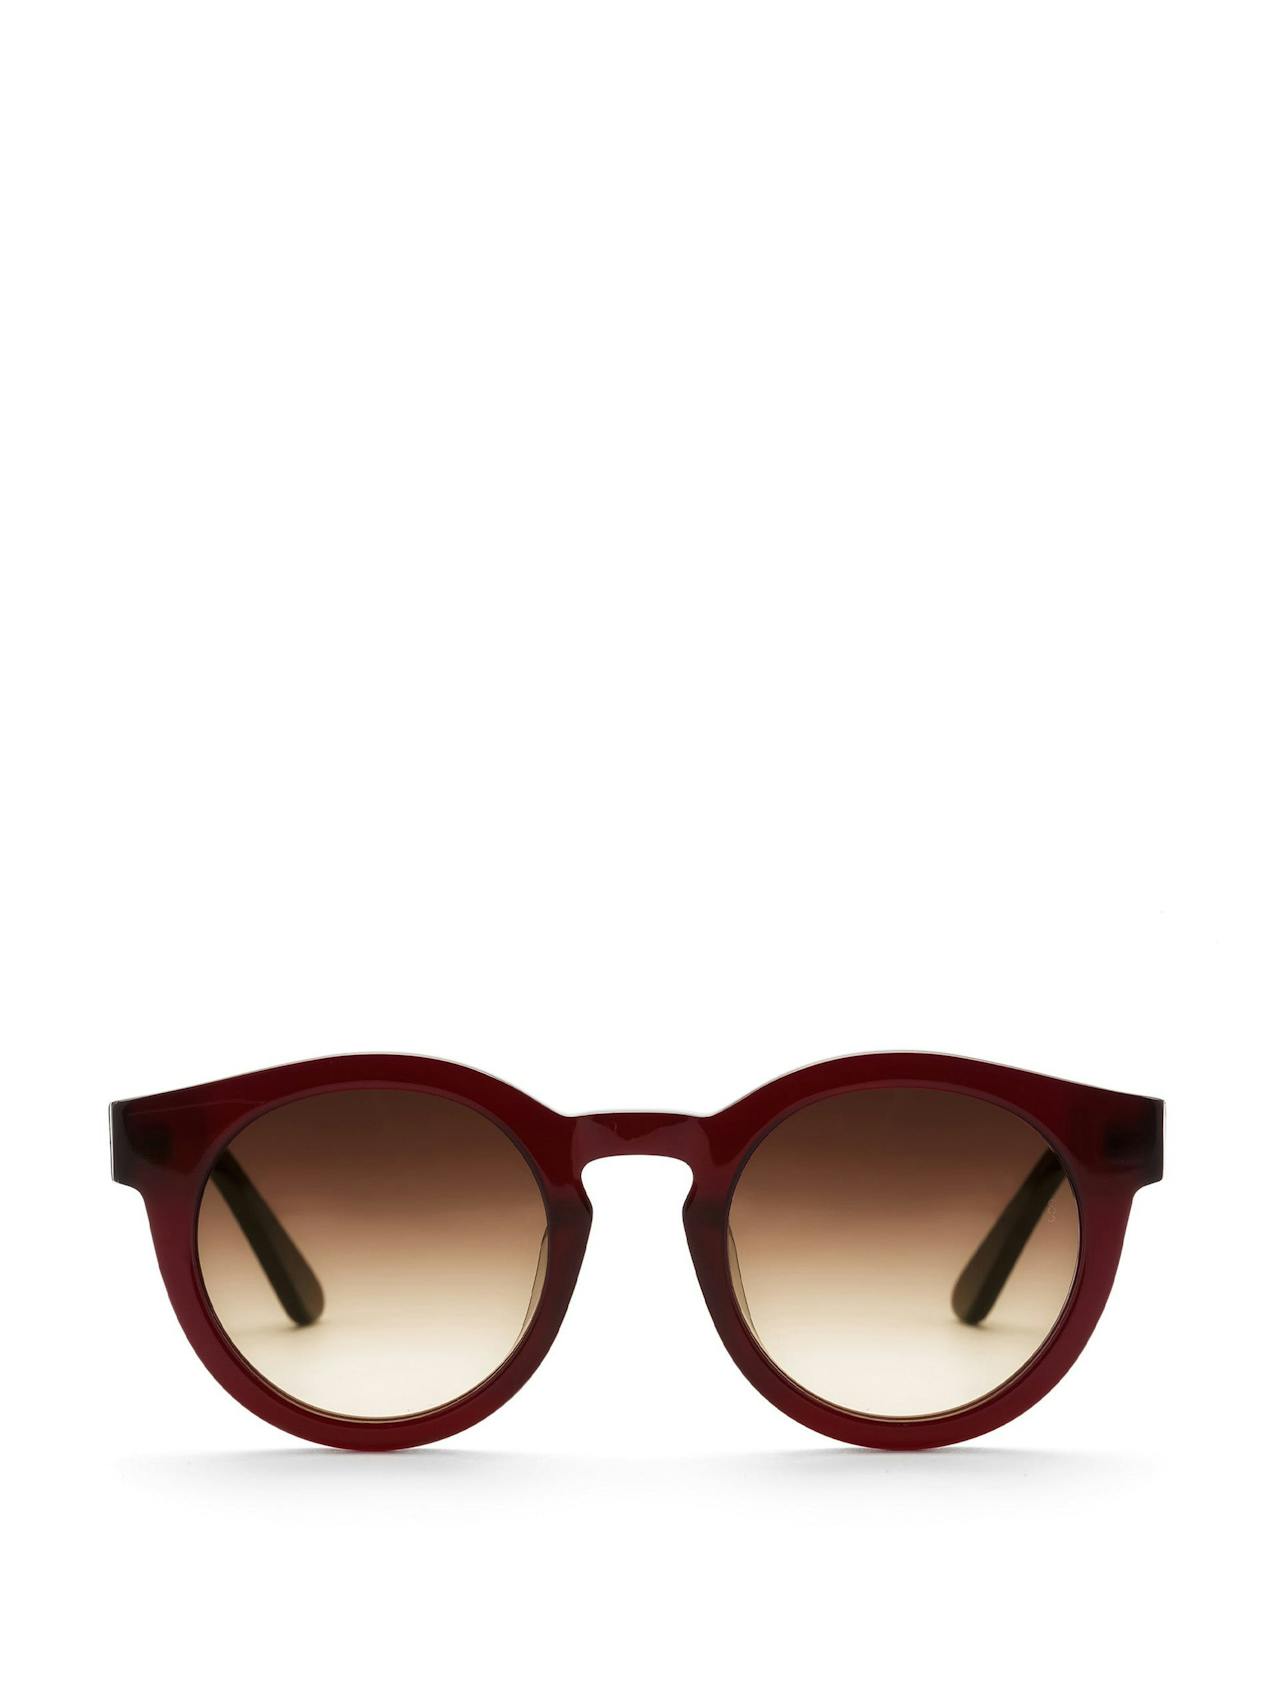 Red Soelae sunglasses